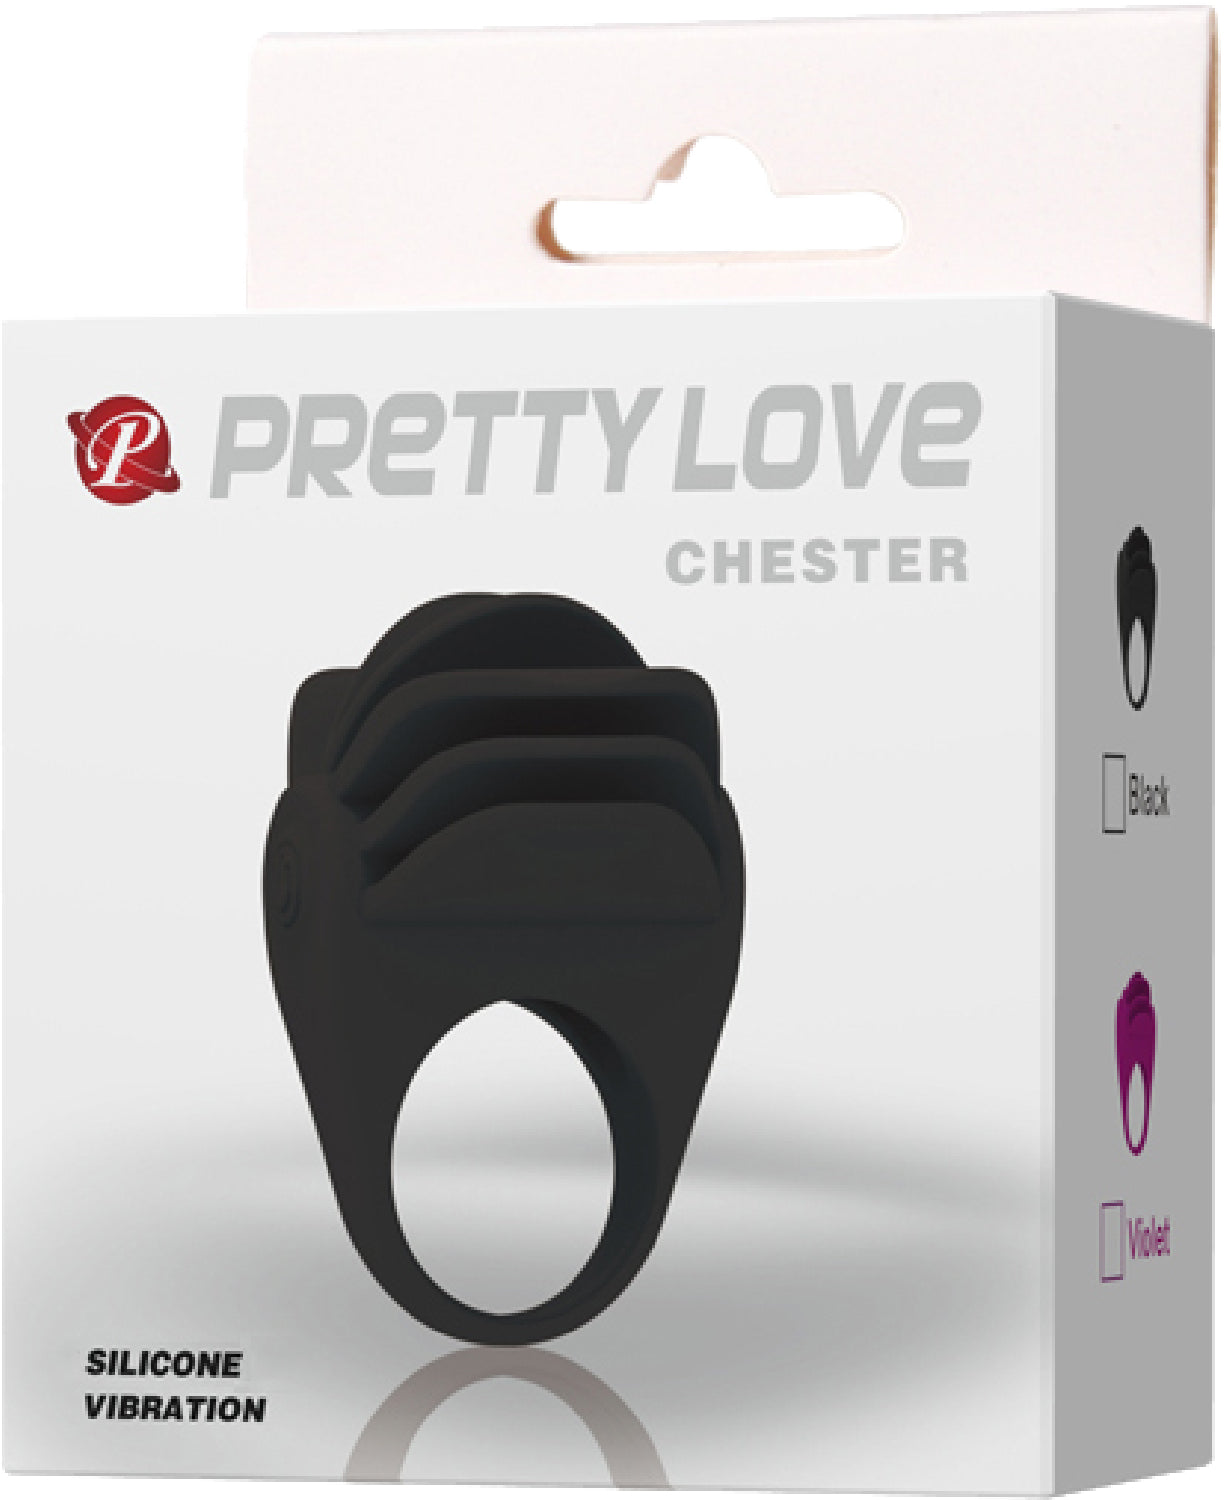 Pretty Love Chester Cockring (Black)  - Club X